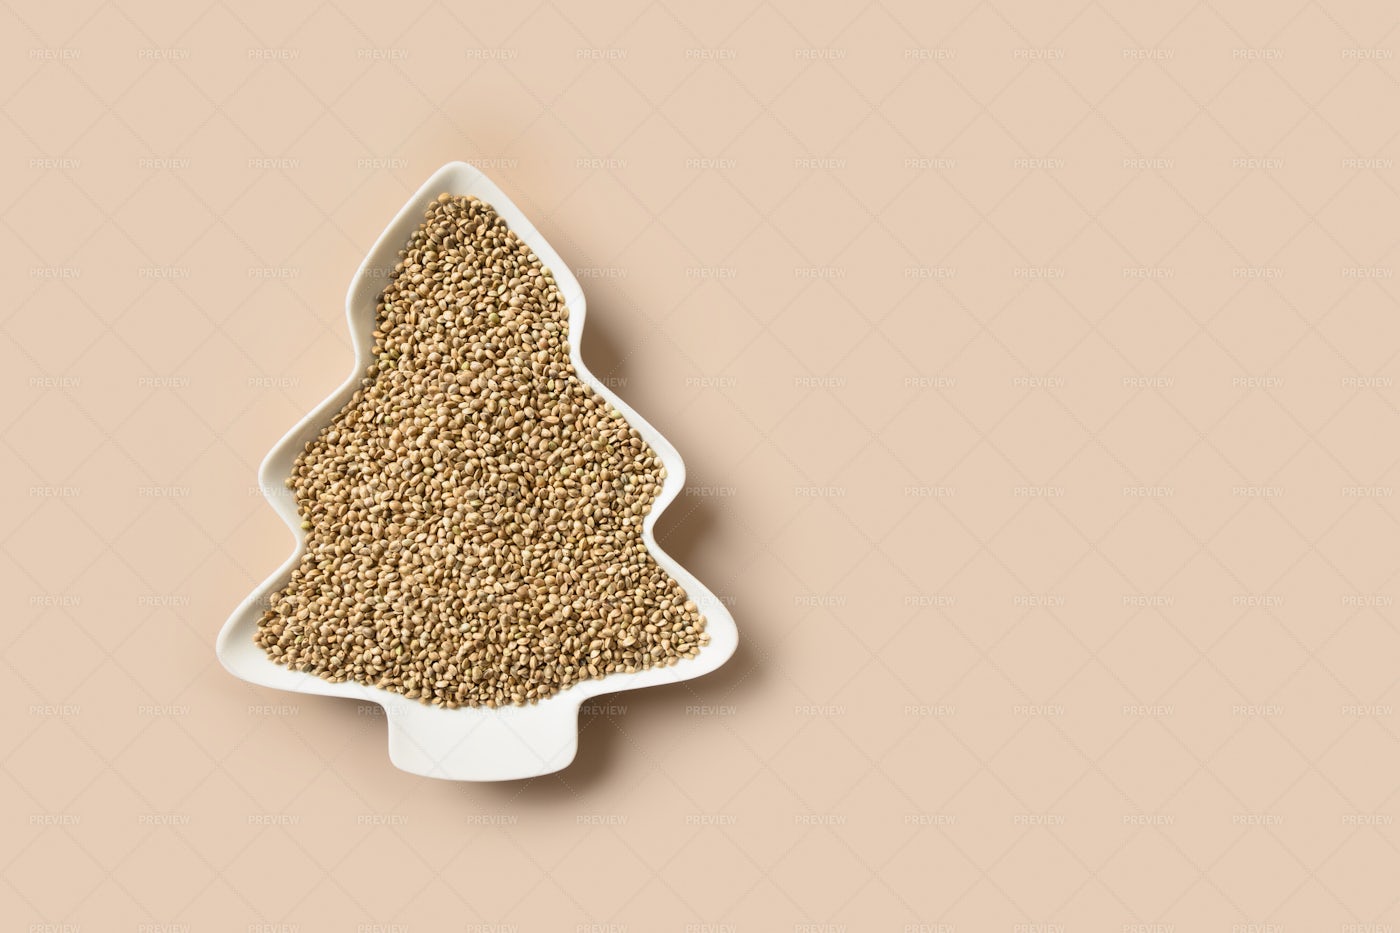 Hemp Seeds As Christmas Tree: Stock Photos